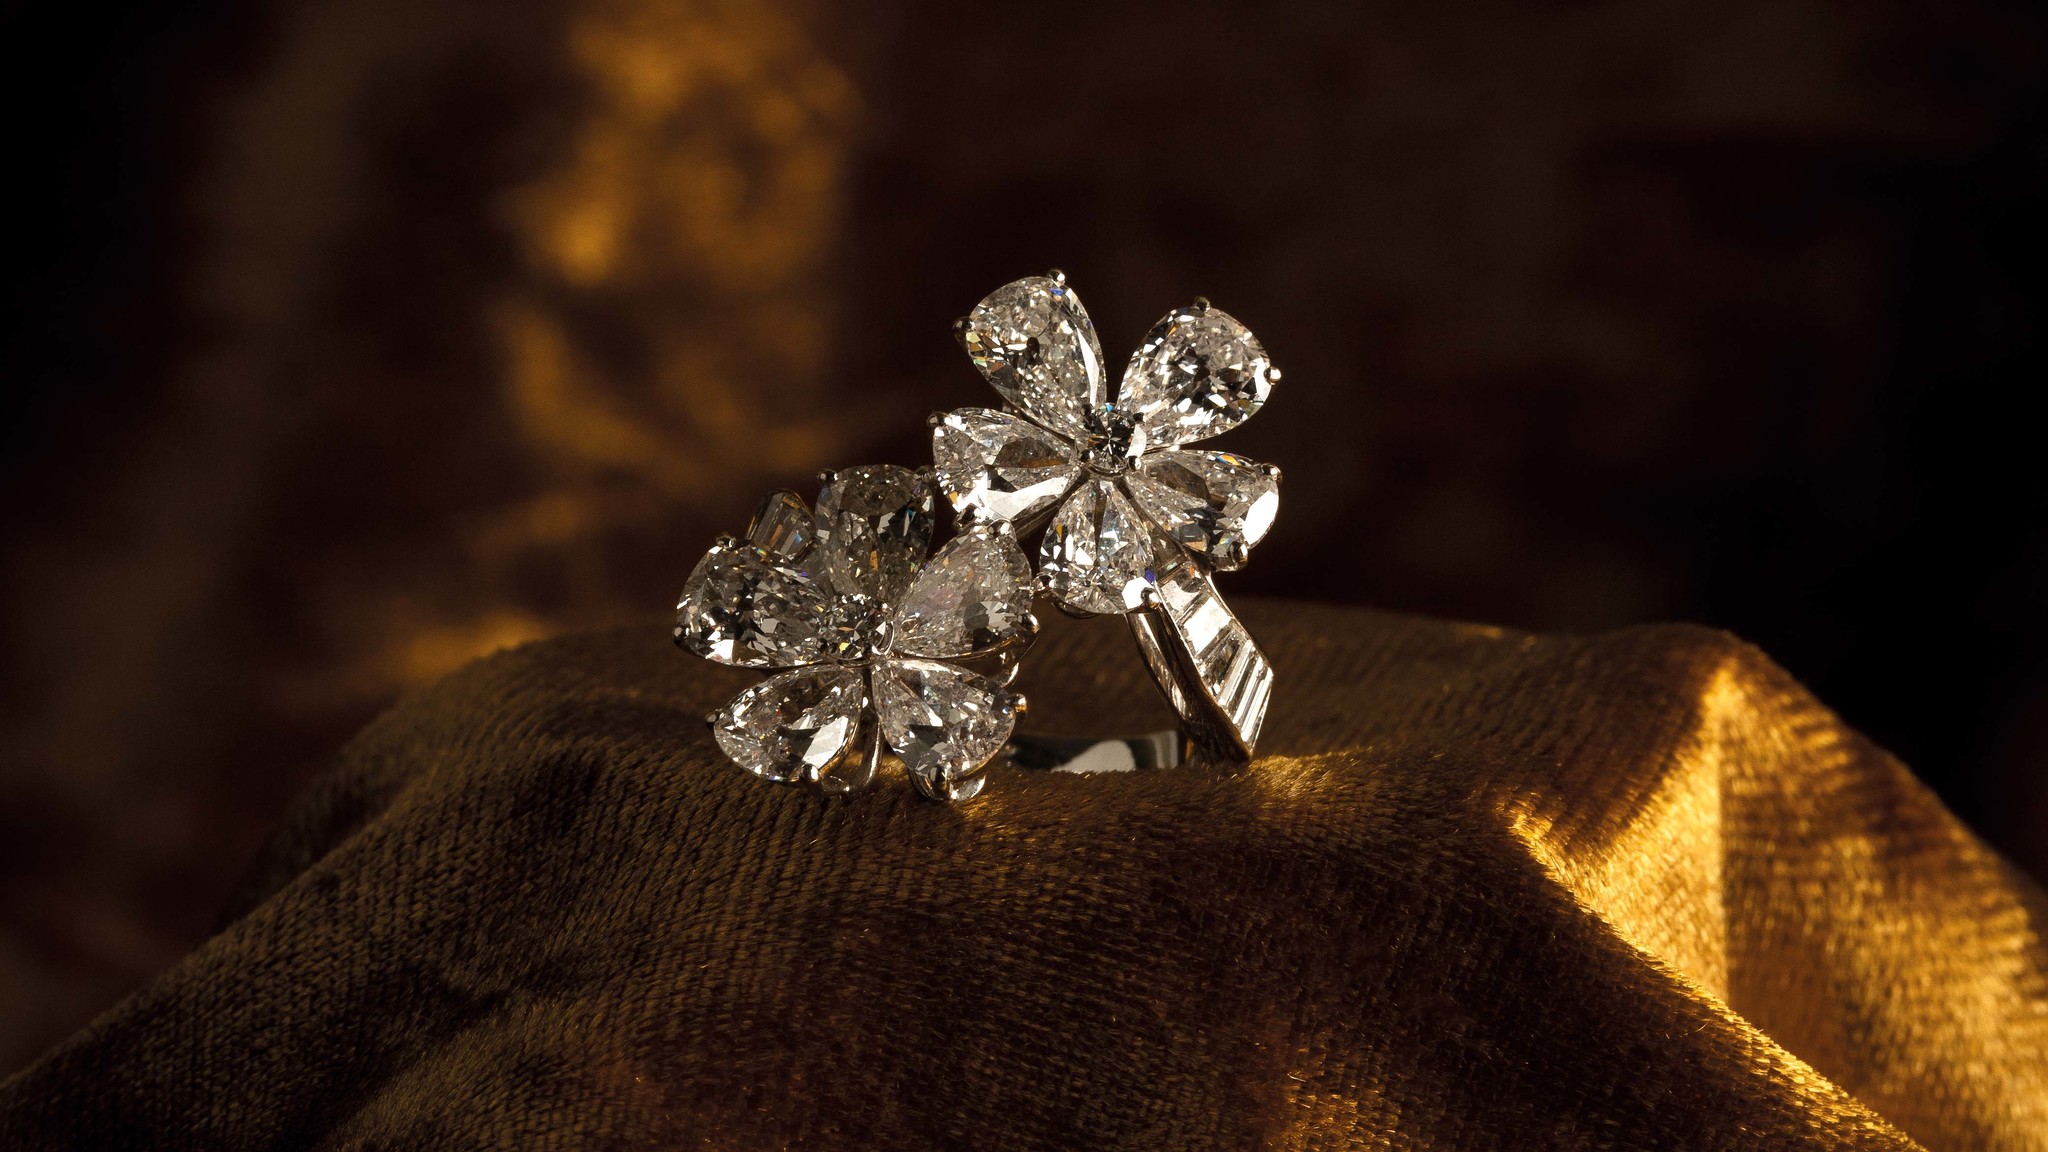 Pendientes van cleef & arpels realizados en platino, a modo de ramillete, con dos f lores superpuestas, decoradas con diamantes,corresponde con piezas realizadas en los años 50